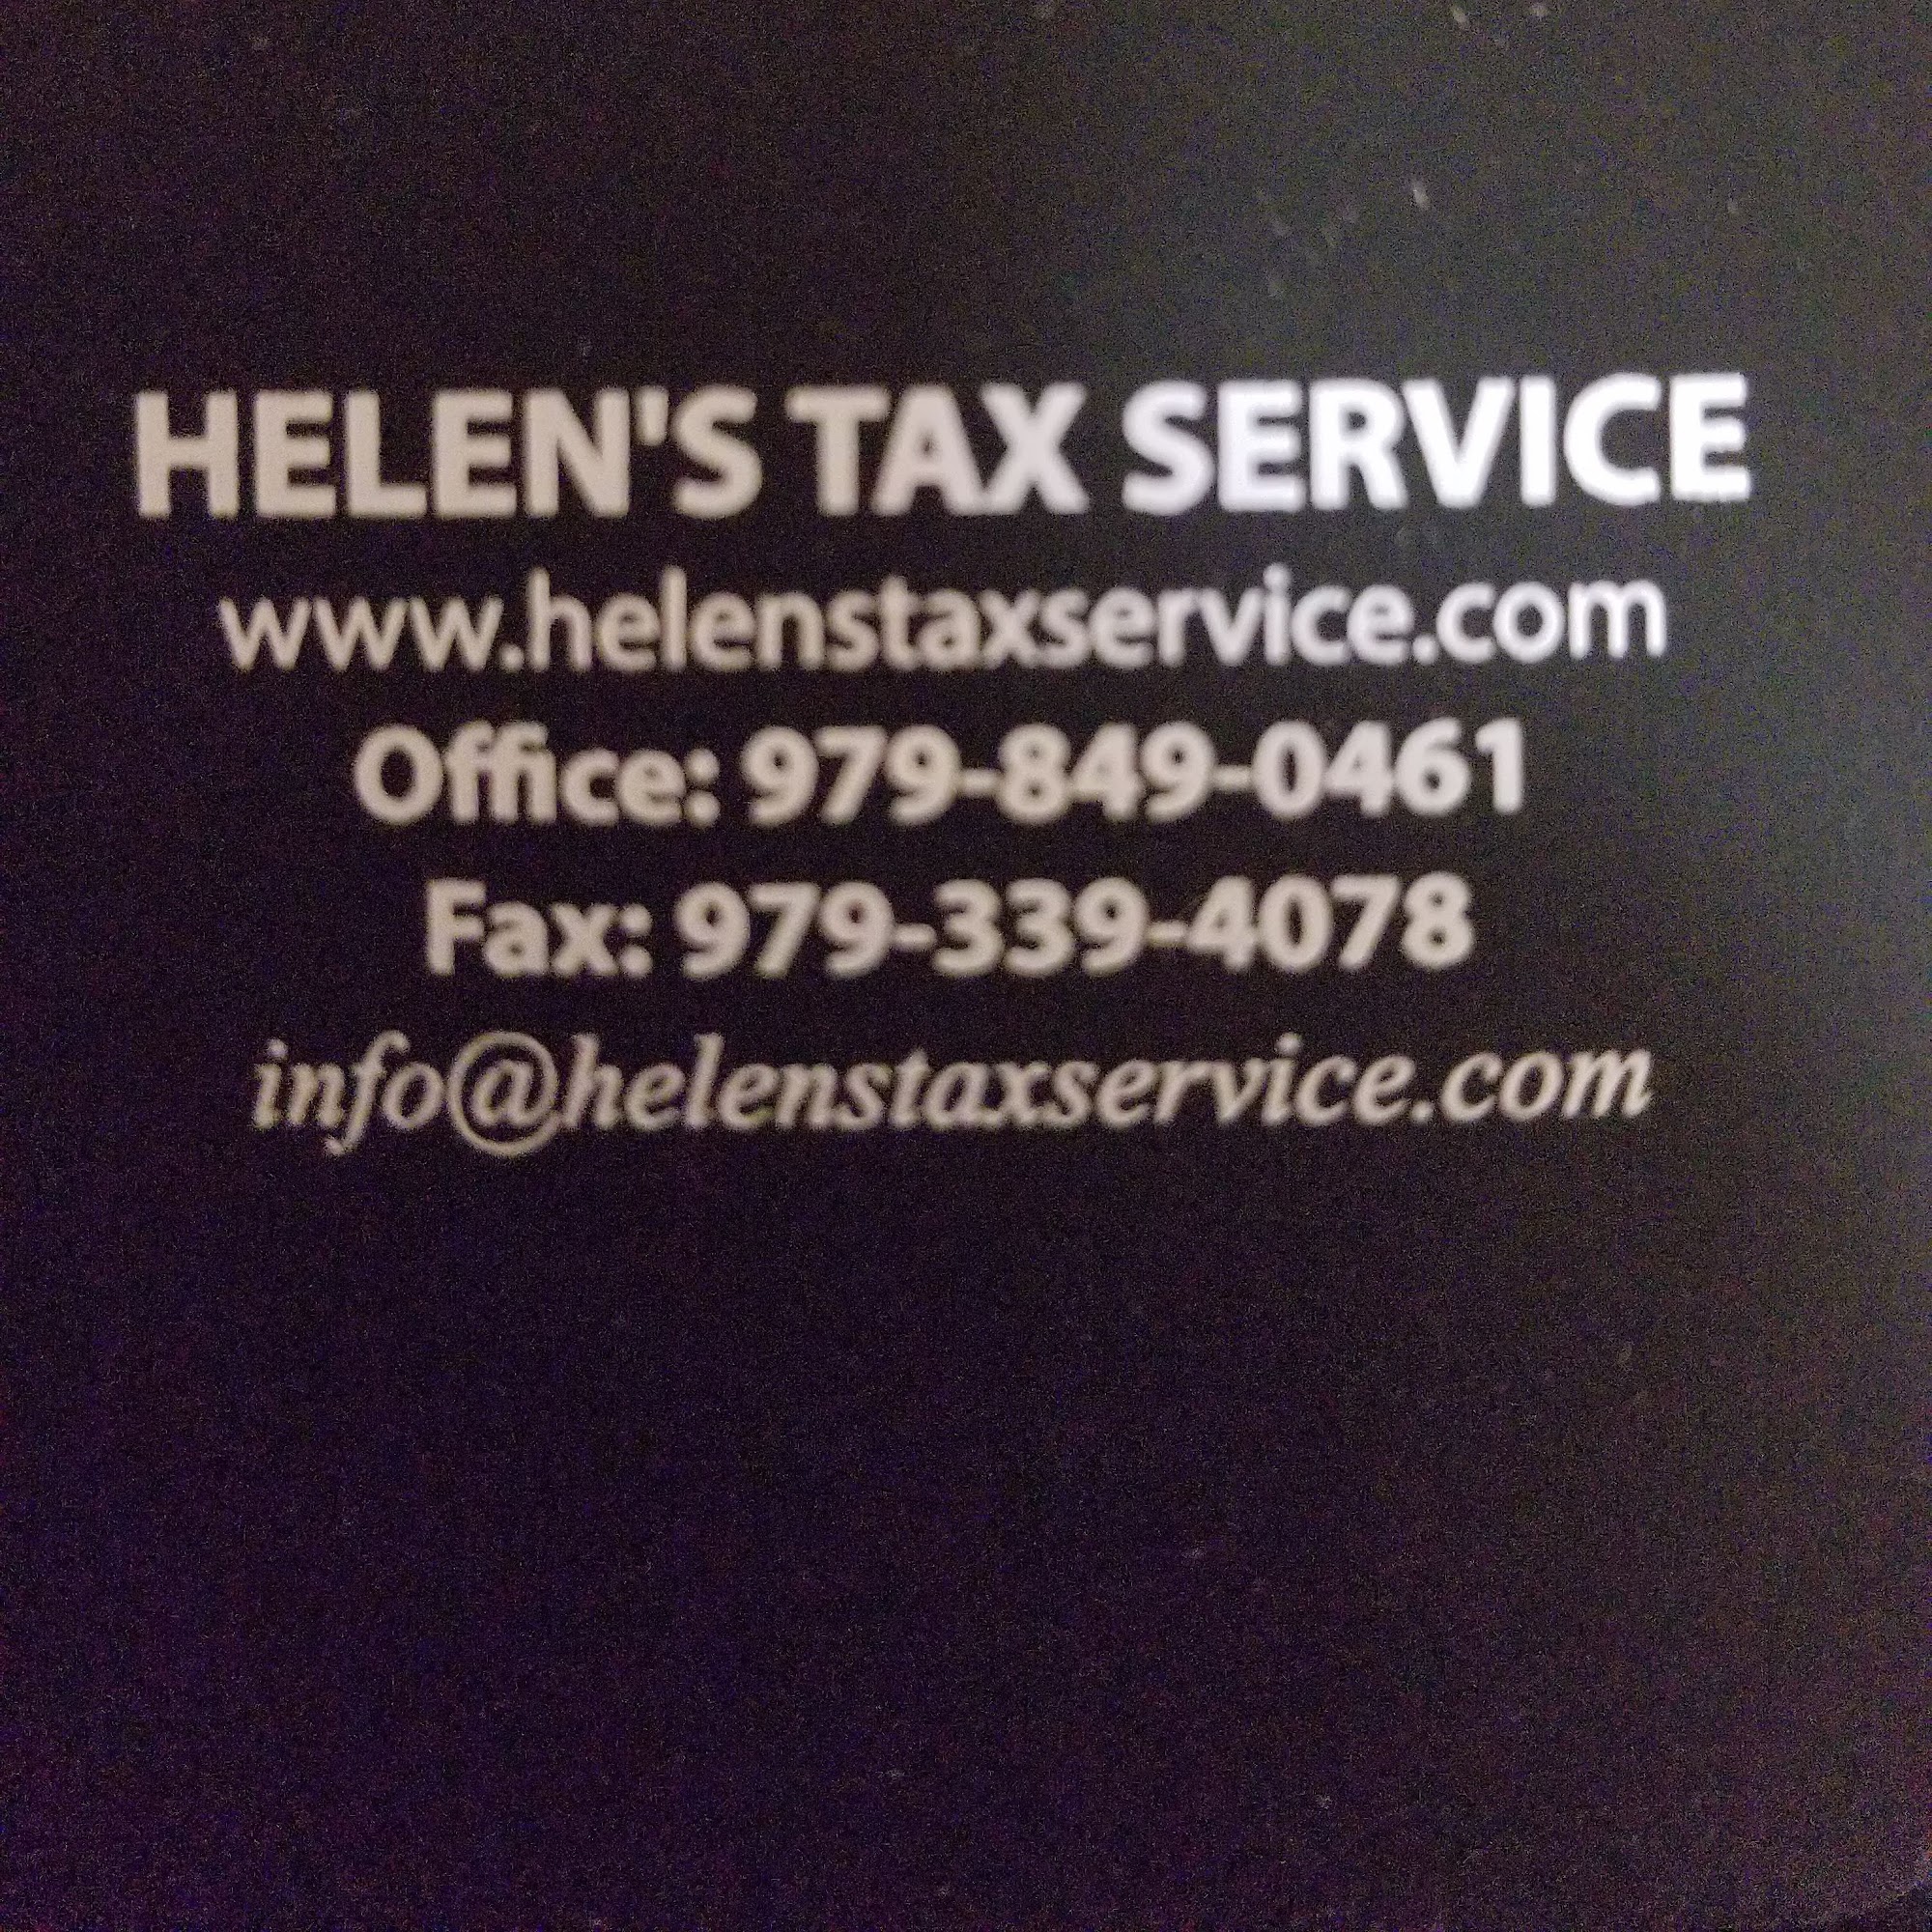 Helen's Tax Service